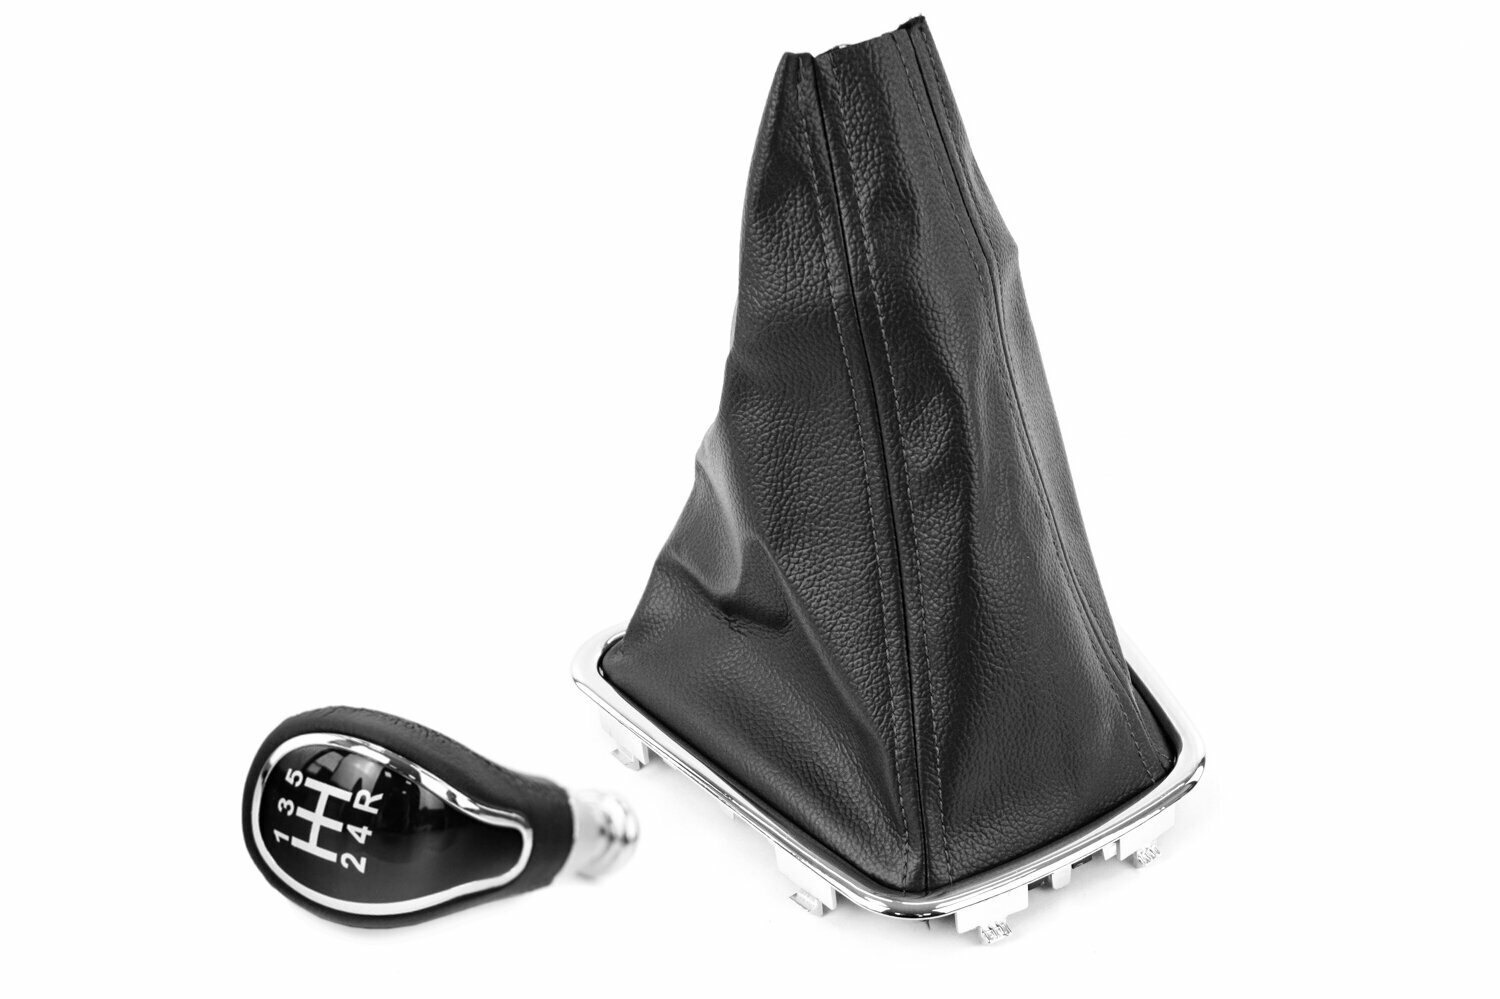 Ручка КПП Sal-Man с пыльником и хром рамкой в стиле Весты с черной прострочкой для Лада Калина 2 Гранта Гранта FL Датсун с тросовым приводом